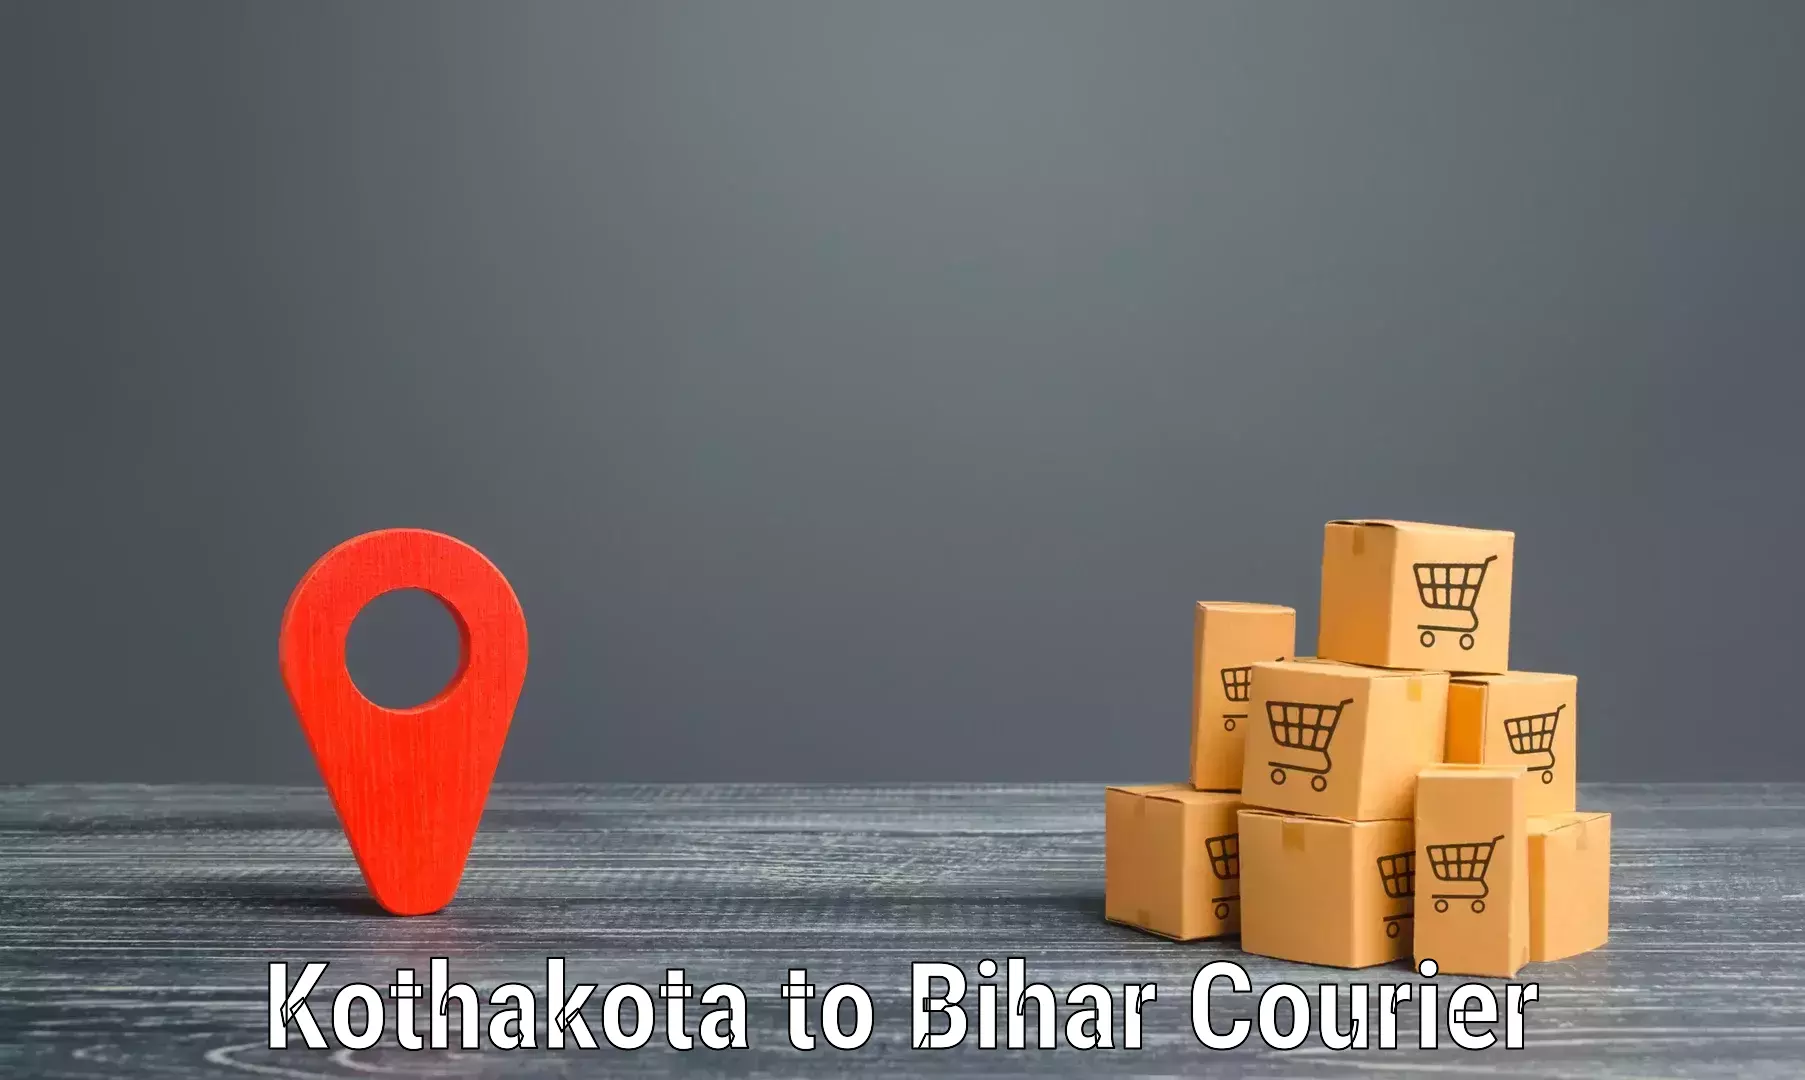 Modern delivery technologies Kothakota to Baisi